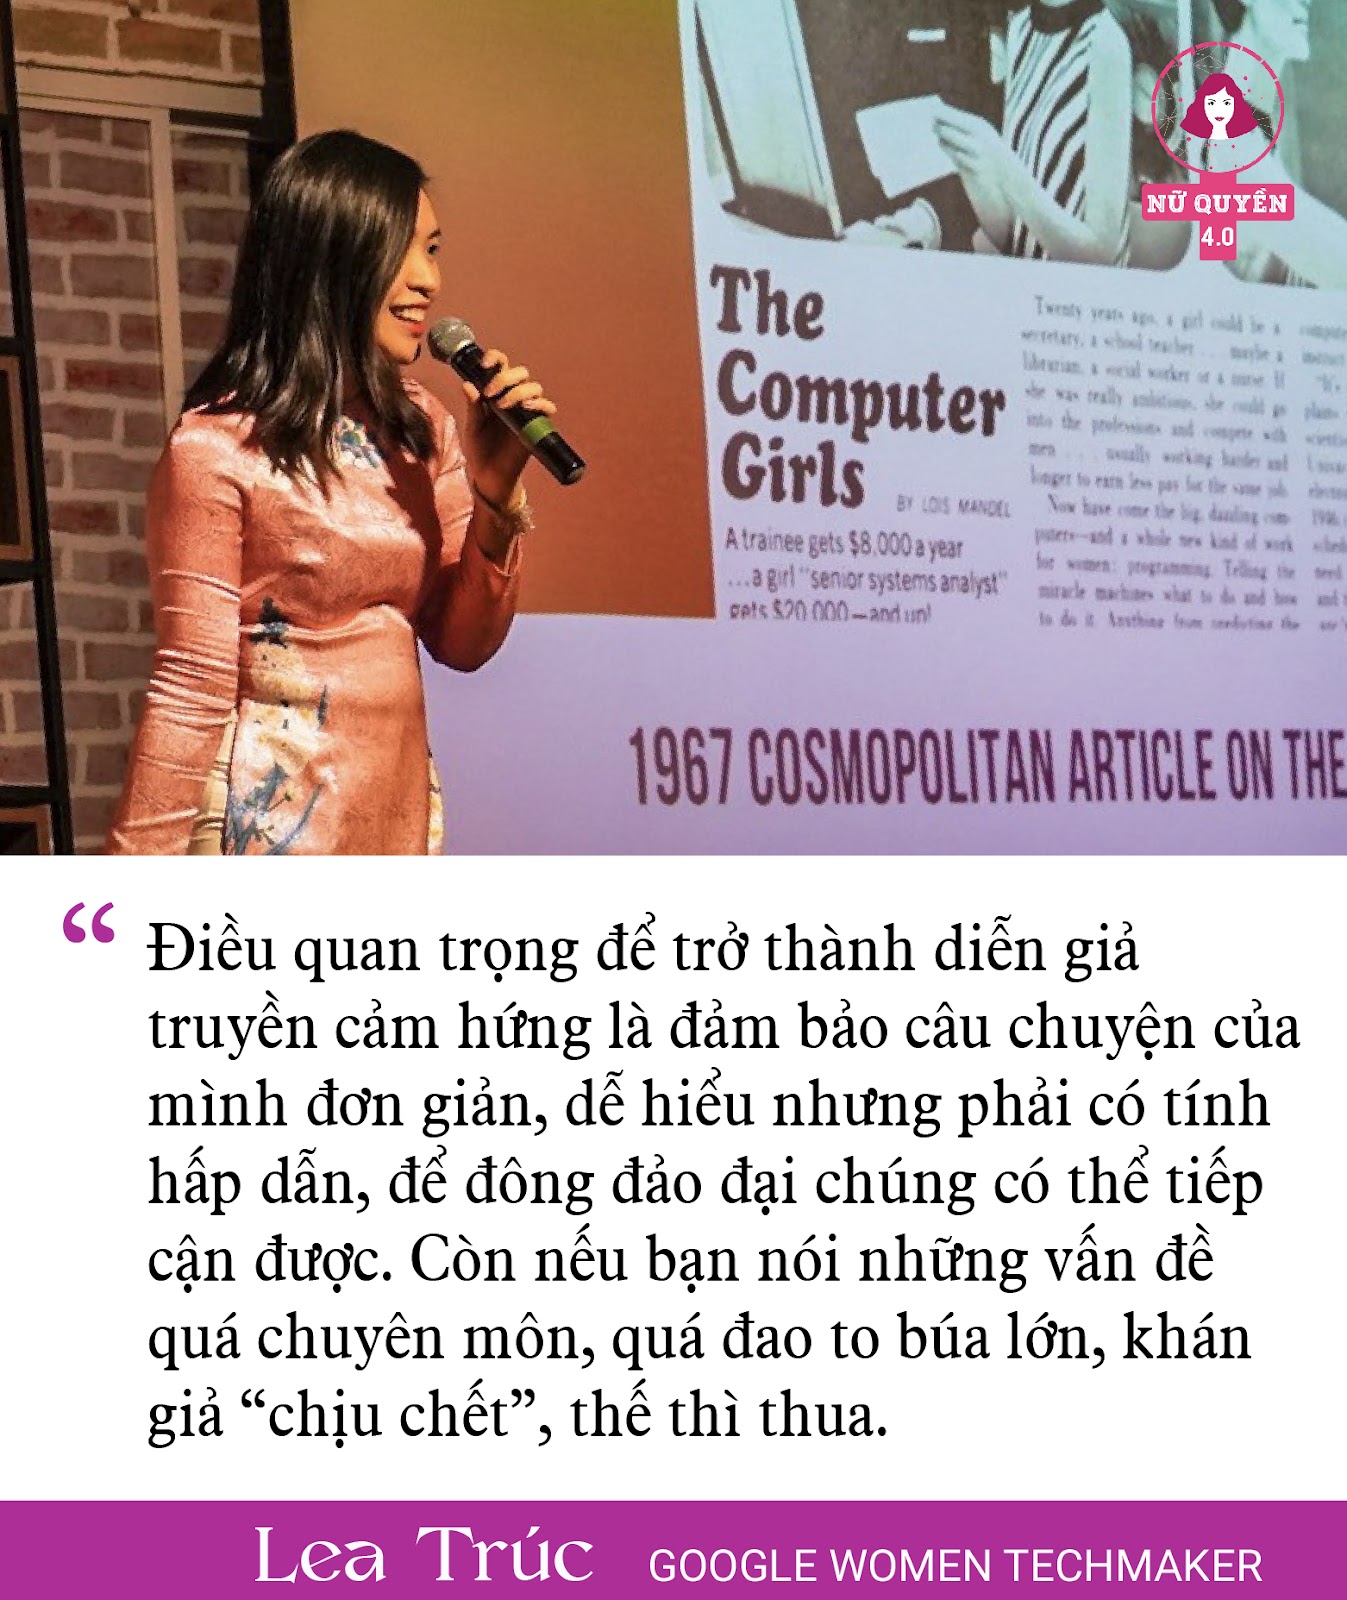 Đại sứ nữ nhân công nghệ đầu tiên của Google tại VN: “Đưa Việt Nam lên bản đồ nữ nhân công nghệ thế giới, để phụ nữ tỏa sáng trên vũ đài lập trình” - Ảnh 6.